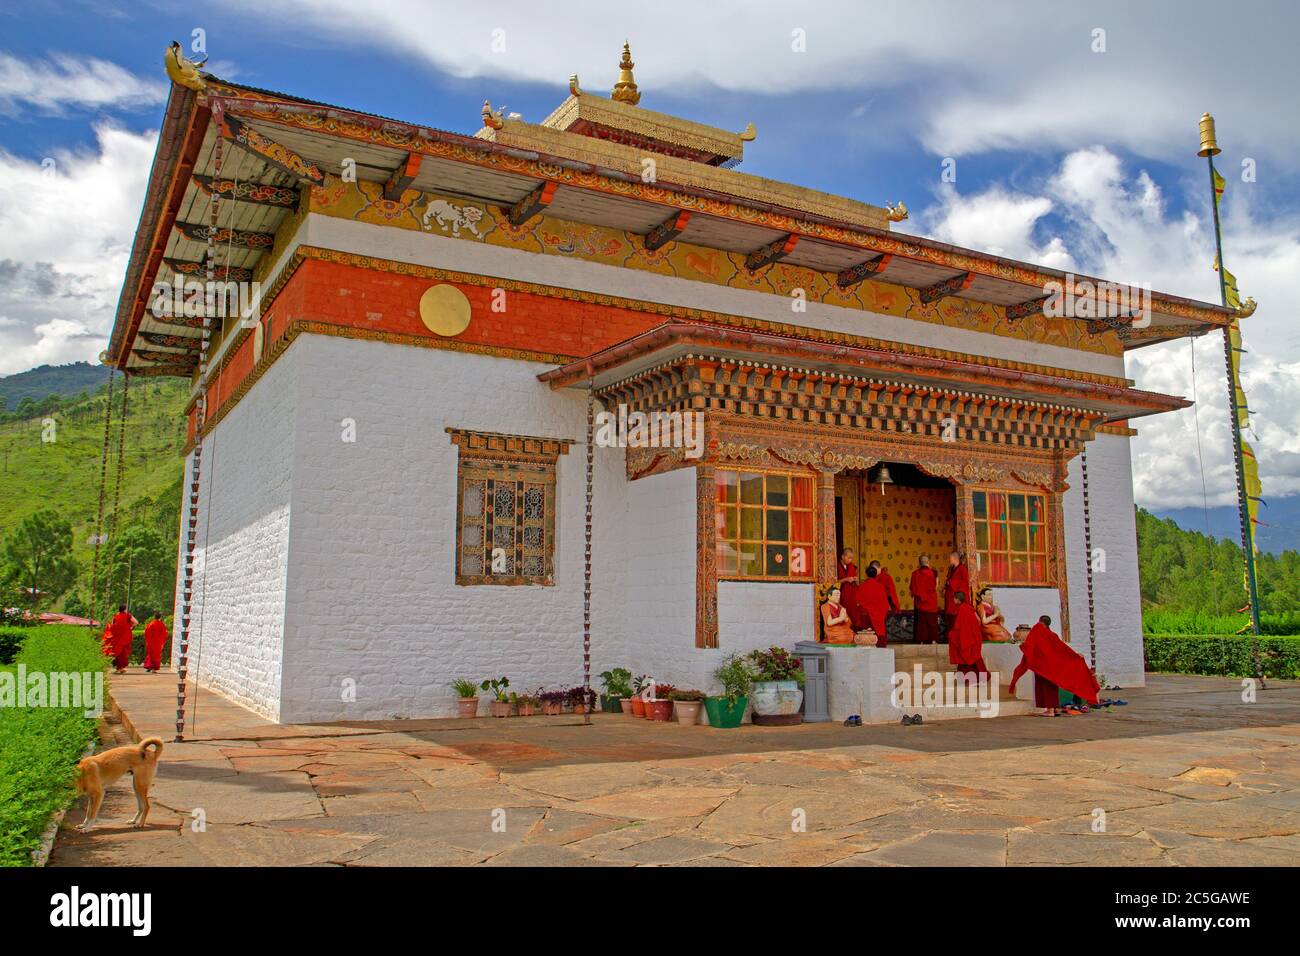 Sangchen Dorji Lhundrup Koeling Buddhiboum College for Nuns dans la vallée du Mo Chhu, Bhoutan Banque D'Images